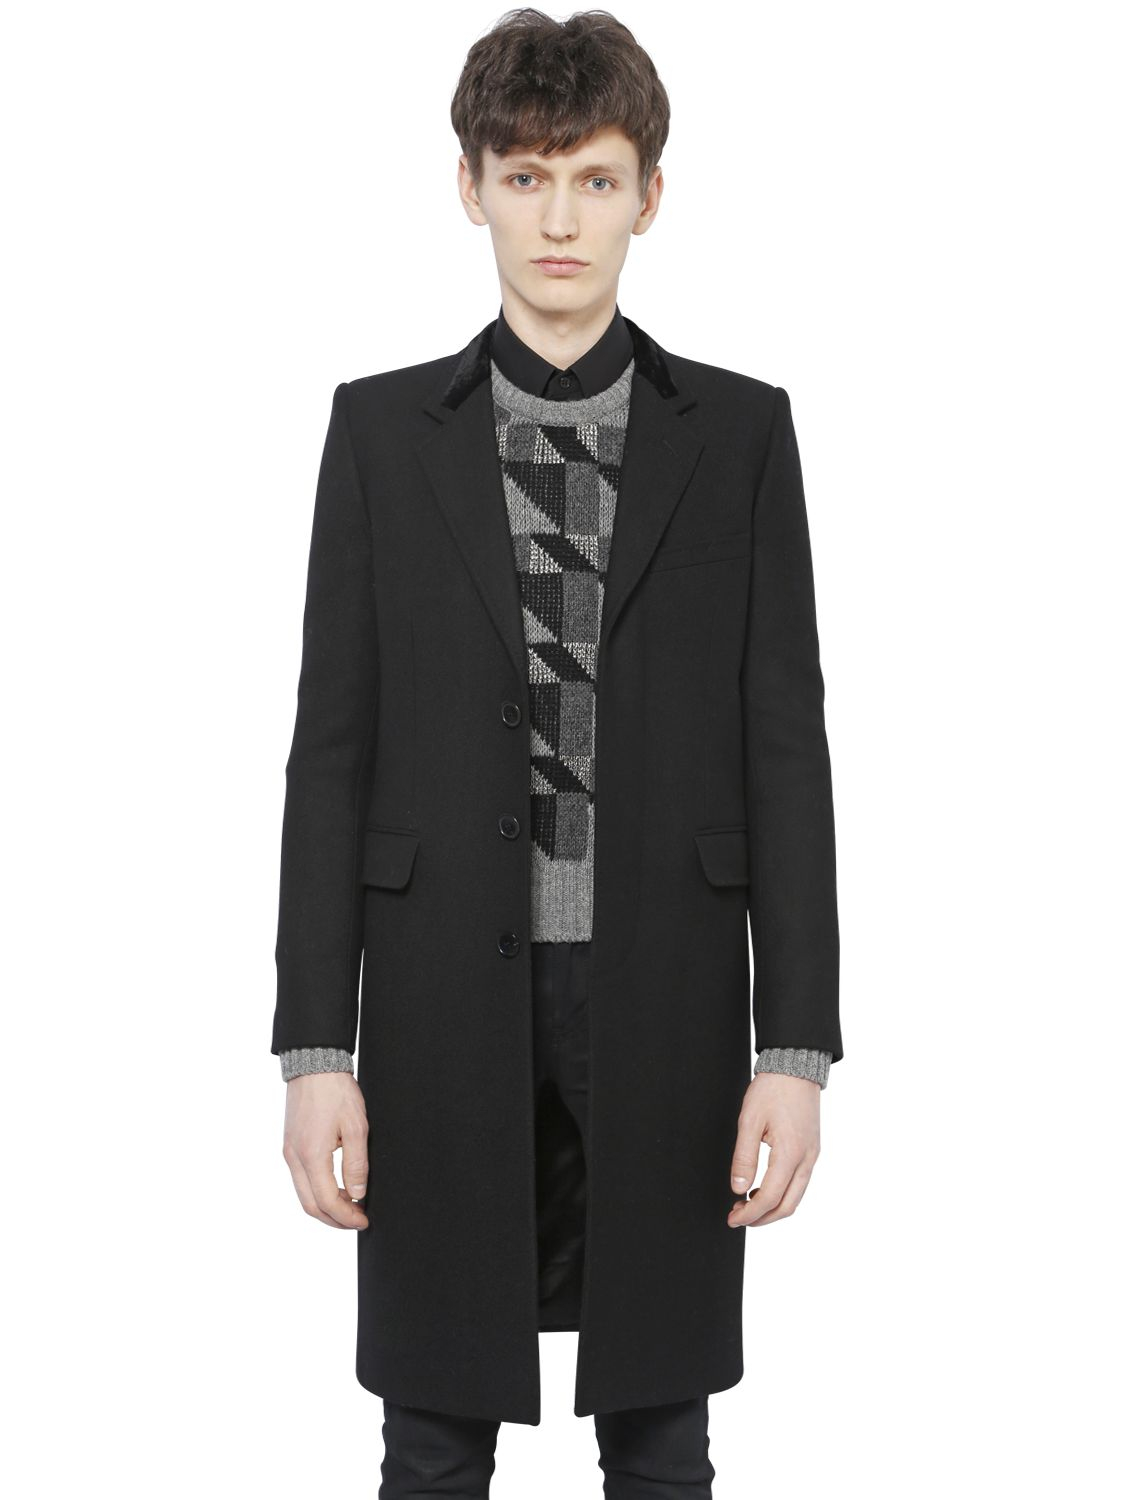 Saint Laurent Velvet & Diagonal Wool Coat in Black for Men - Lyst